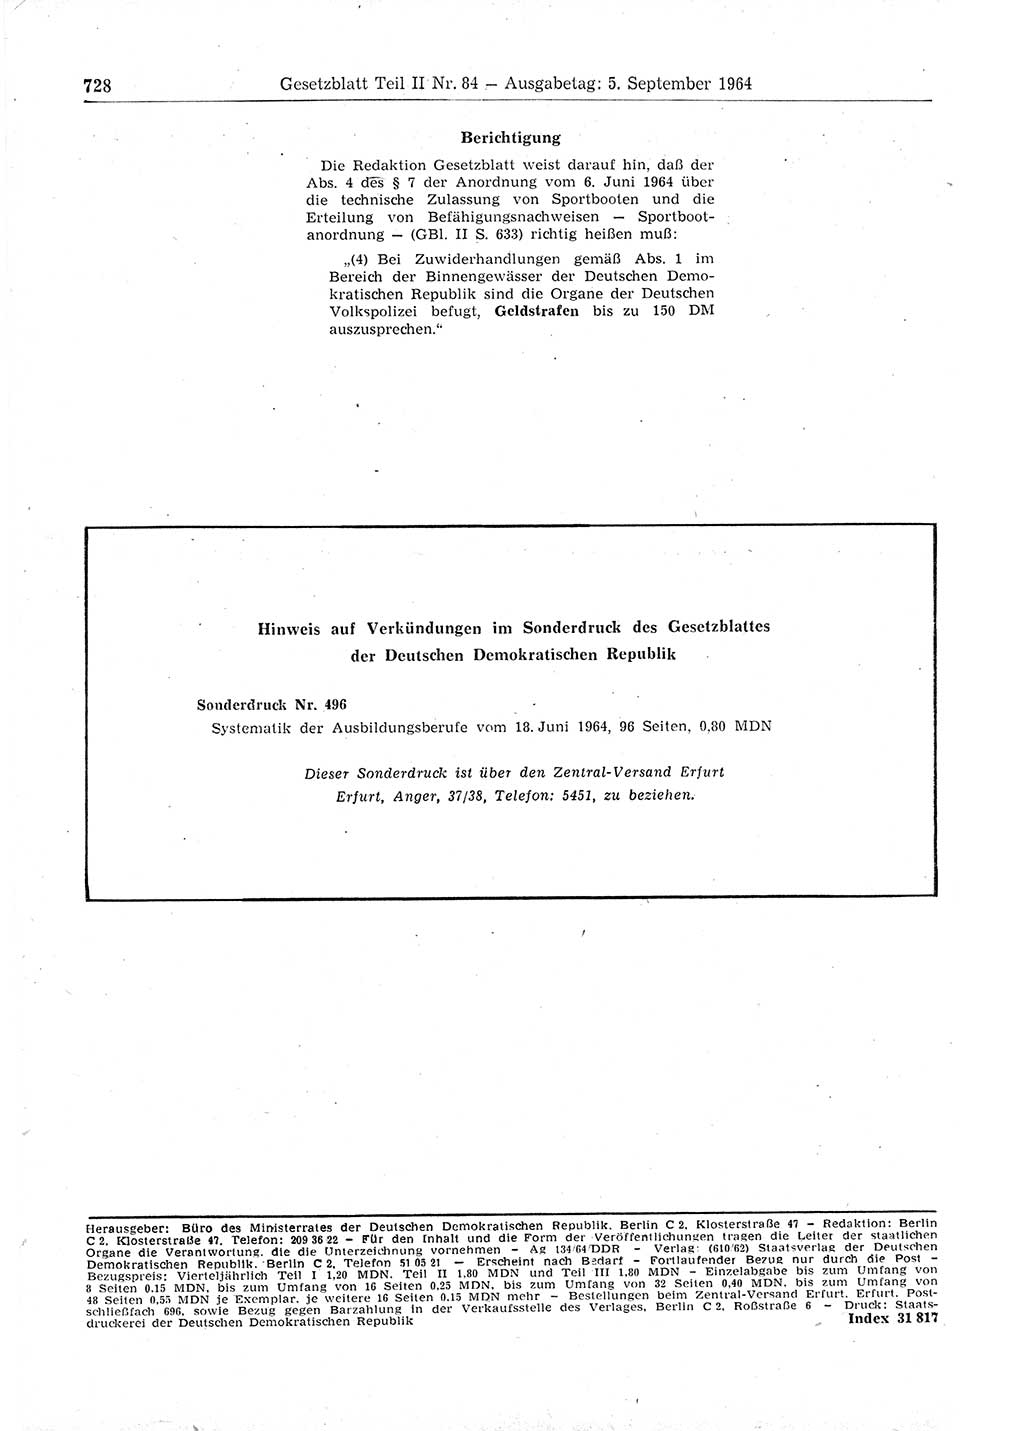 Gesetzblatt (GBl.) der Deutschen Demokratischen Republik (DDR) Teil ⅠⅠ 1964, Seite 728 (GBl. DDR ⅠⅠ 1964, S. 728)